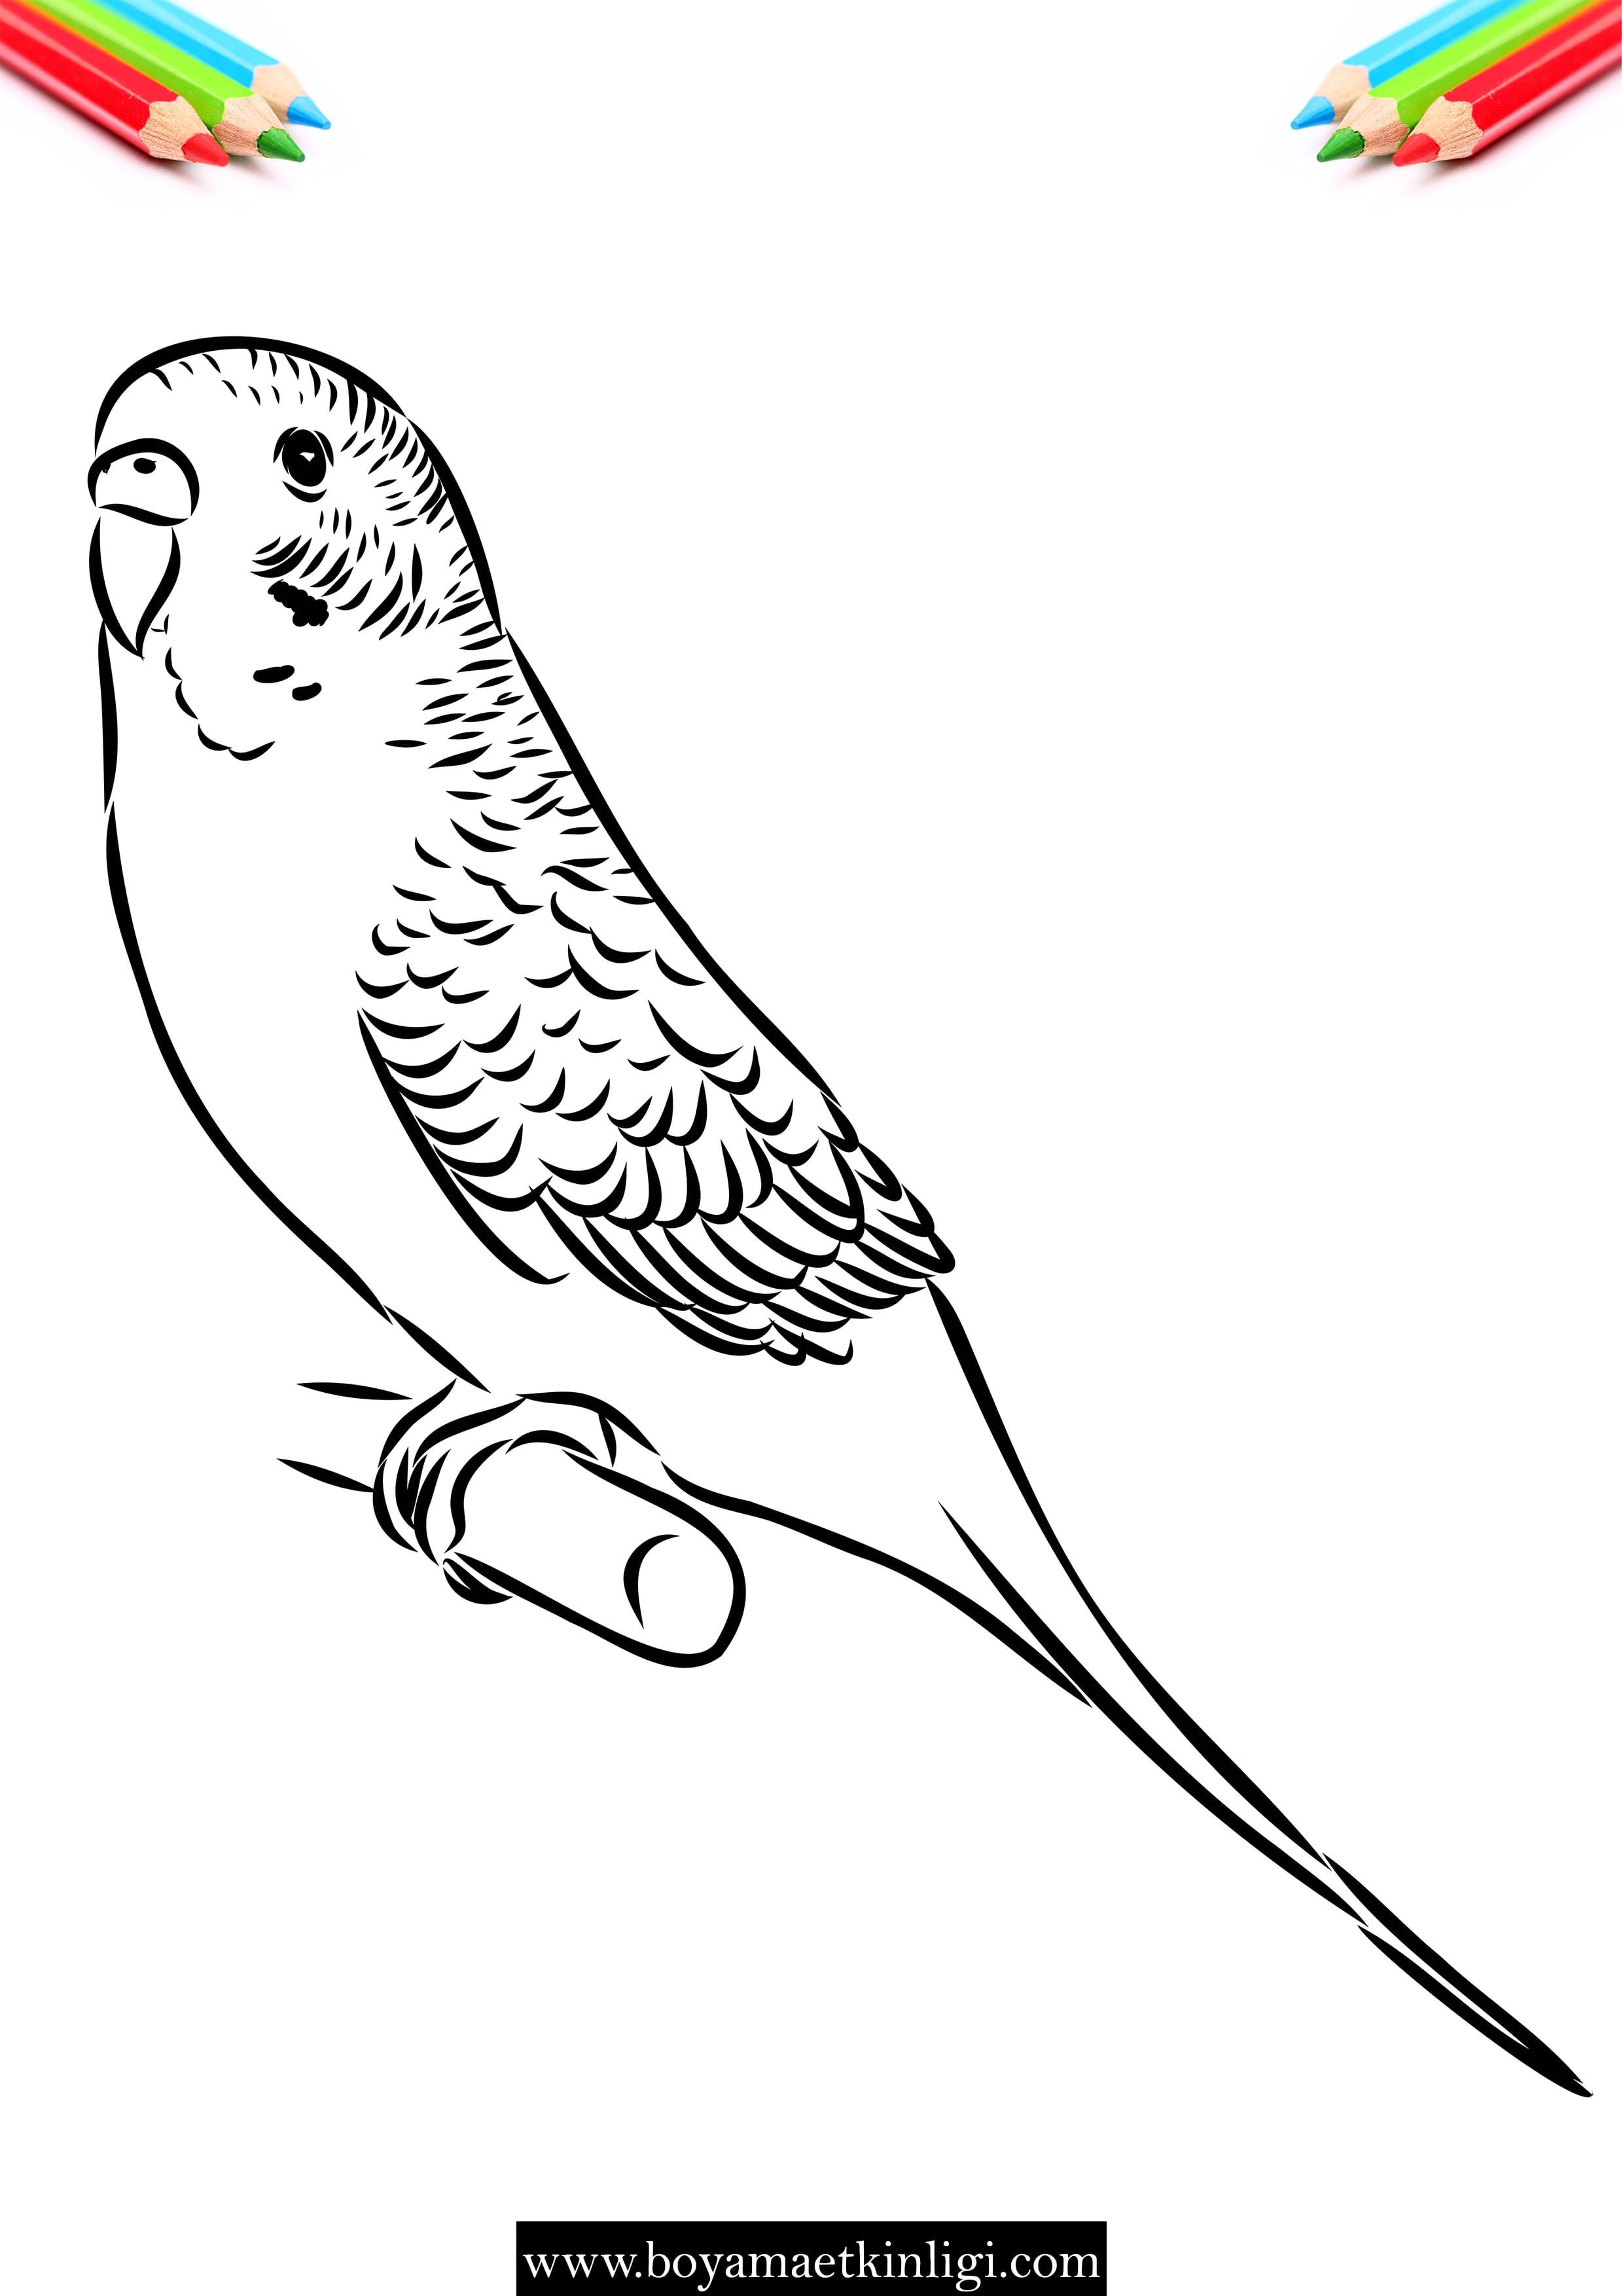 Как нарисовать волнистого попугая карандашами и красками поэтапно